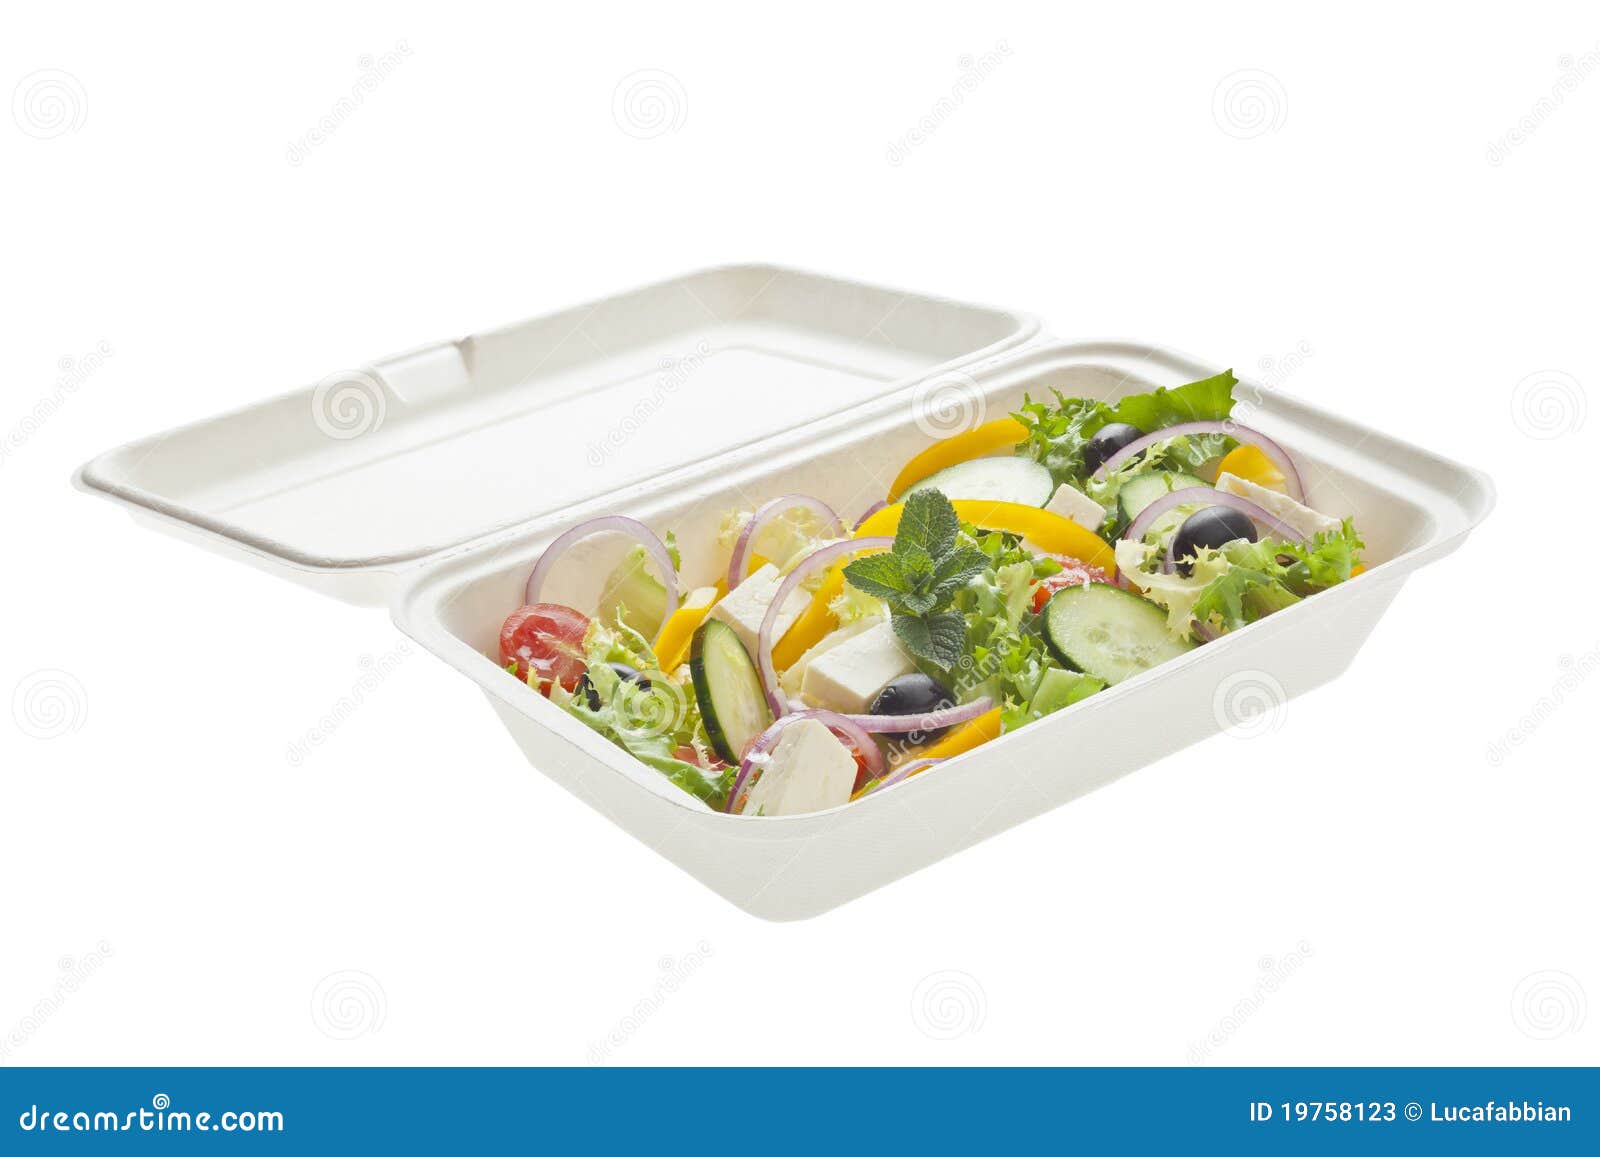 Take away greek salad stock image. Image of antioxidant - 19758123